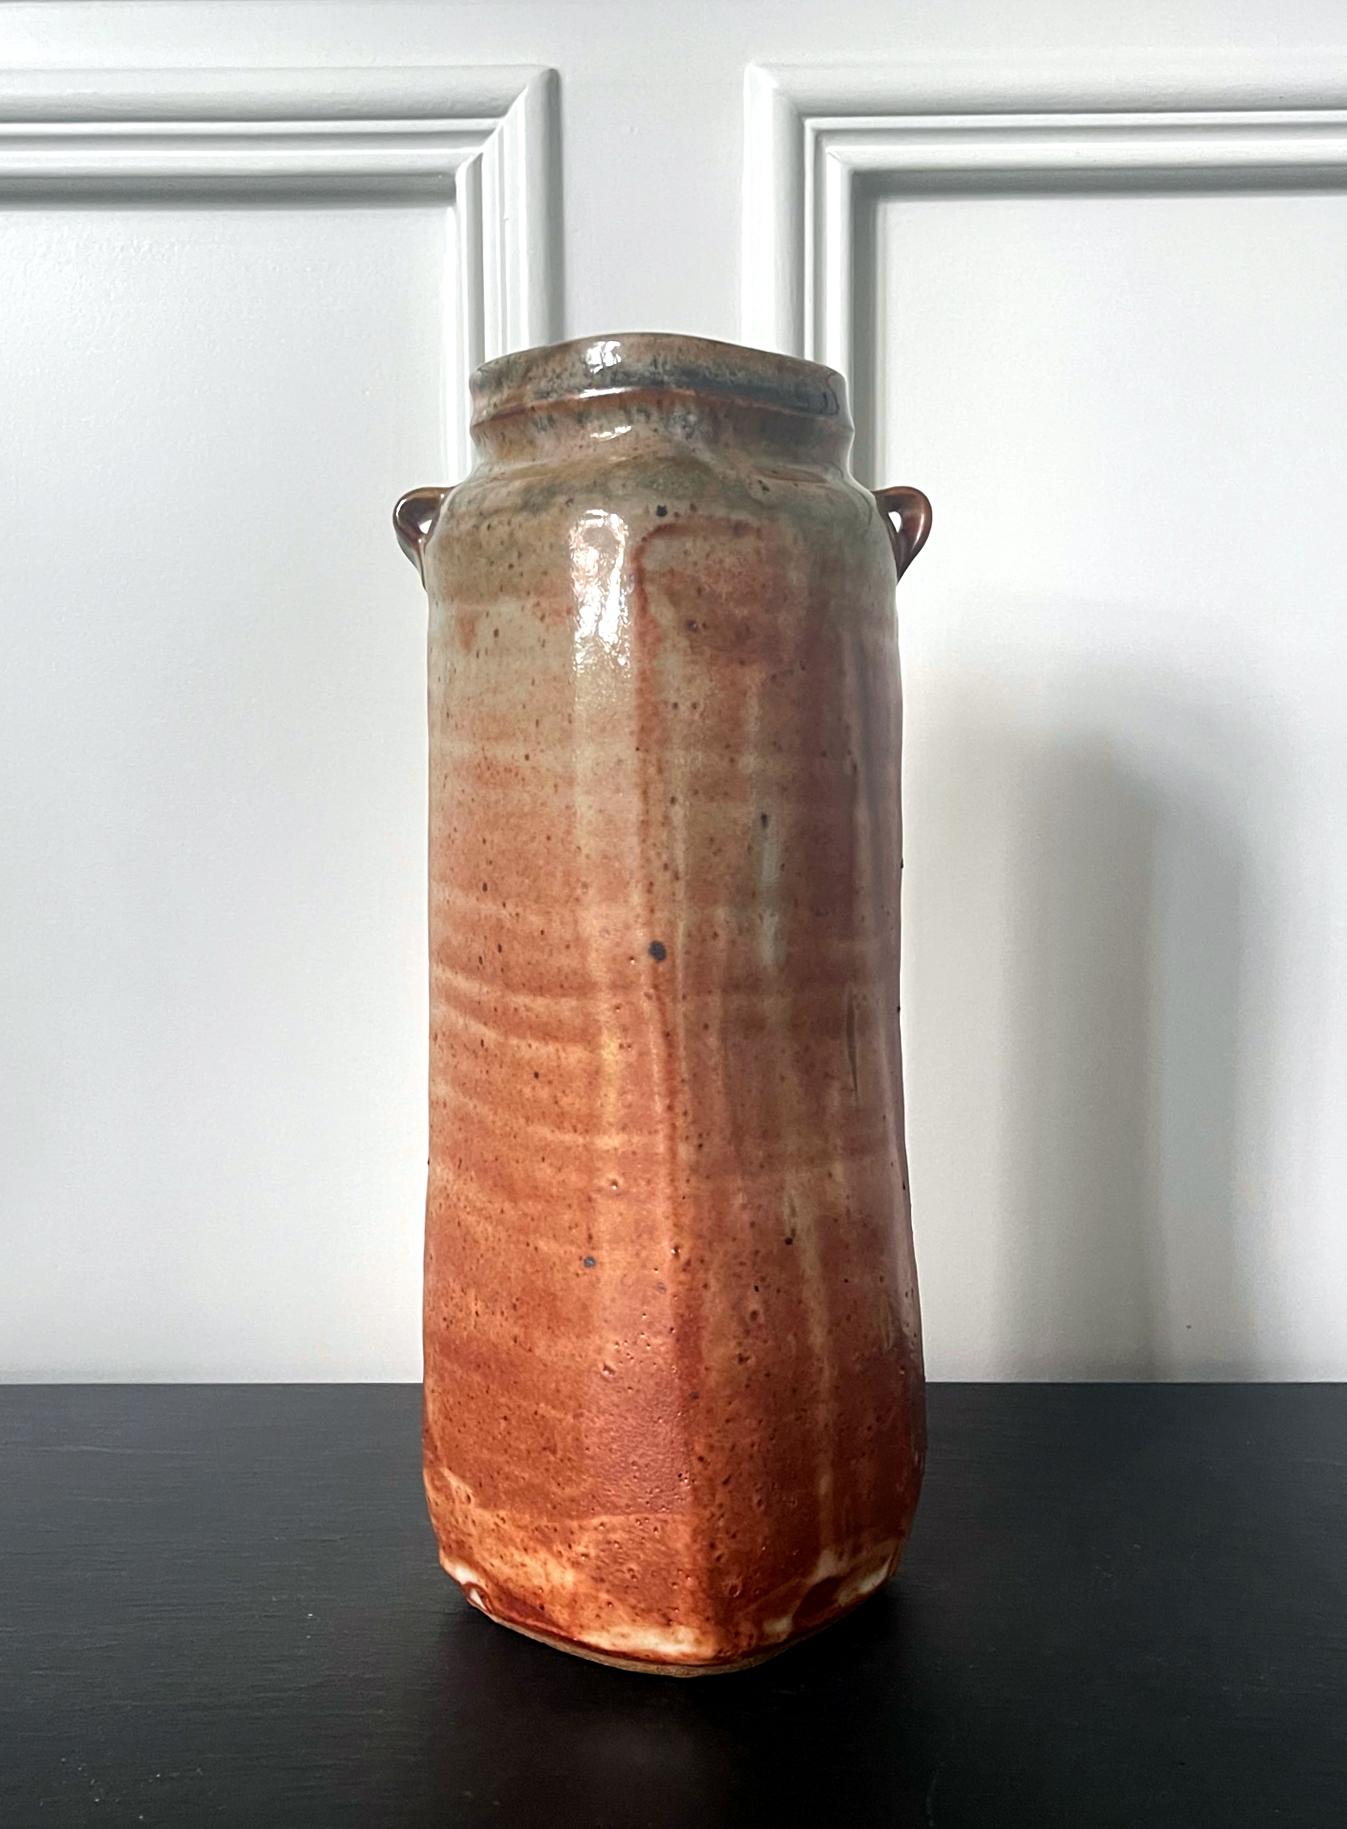 Un grand vase en grès de forme cylindrique du potier américain Warren MacKenzie (1924-2018). Le vase présente une forme légèrement ambiguë entre le cercle et le carré et il comporte deux petites boucles sur l'épaule. La surface est recouverte d'une